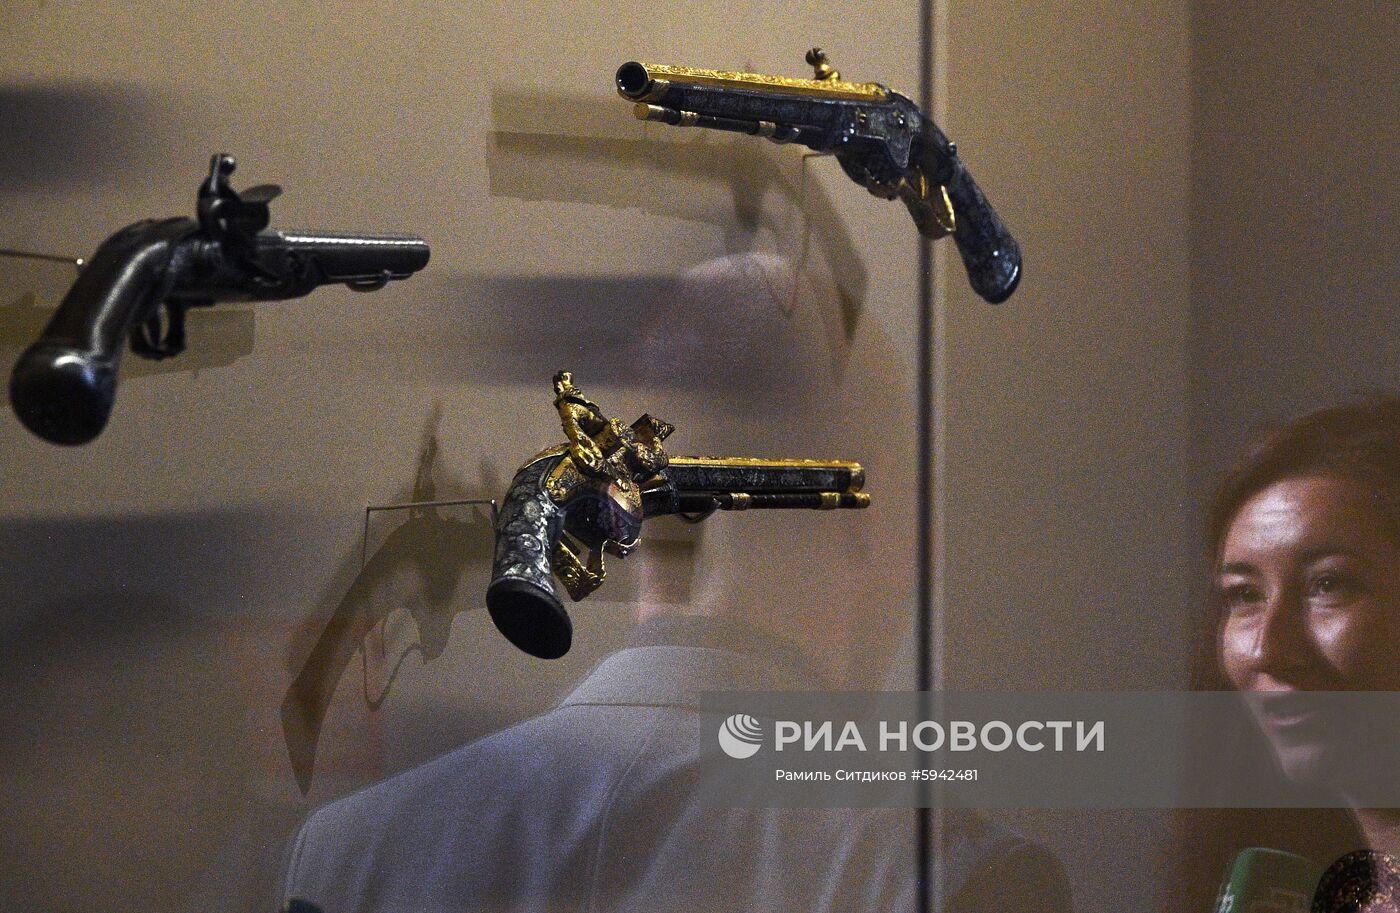 Выставка «Хранители времени. Реставрация в Музеях Московского Кремля»